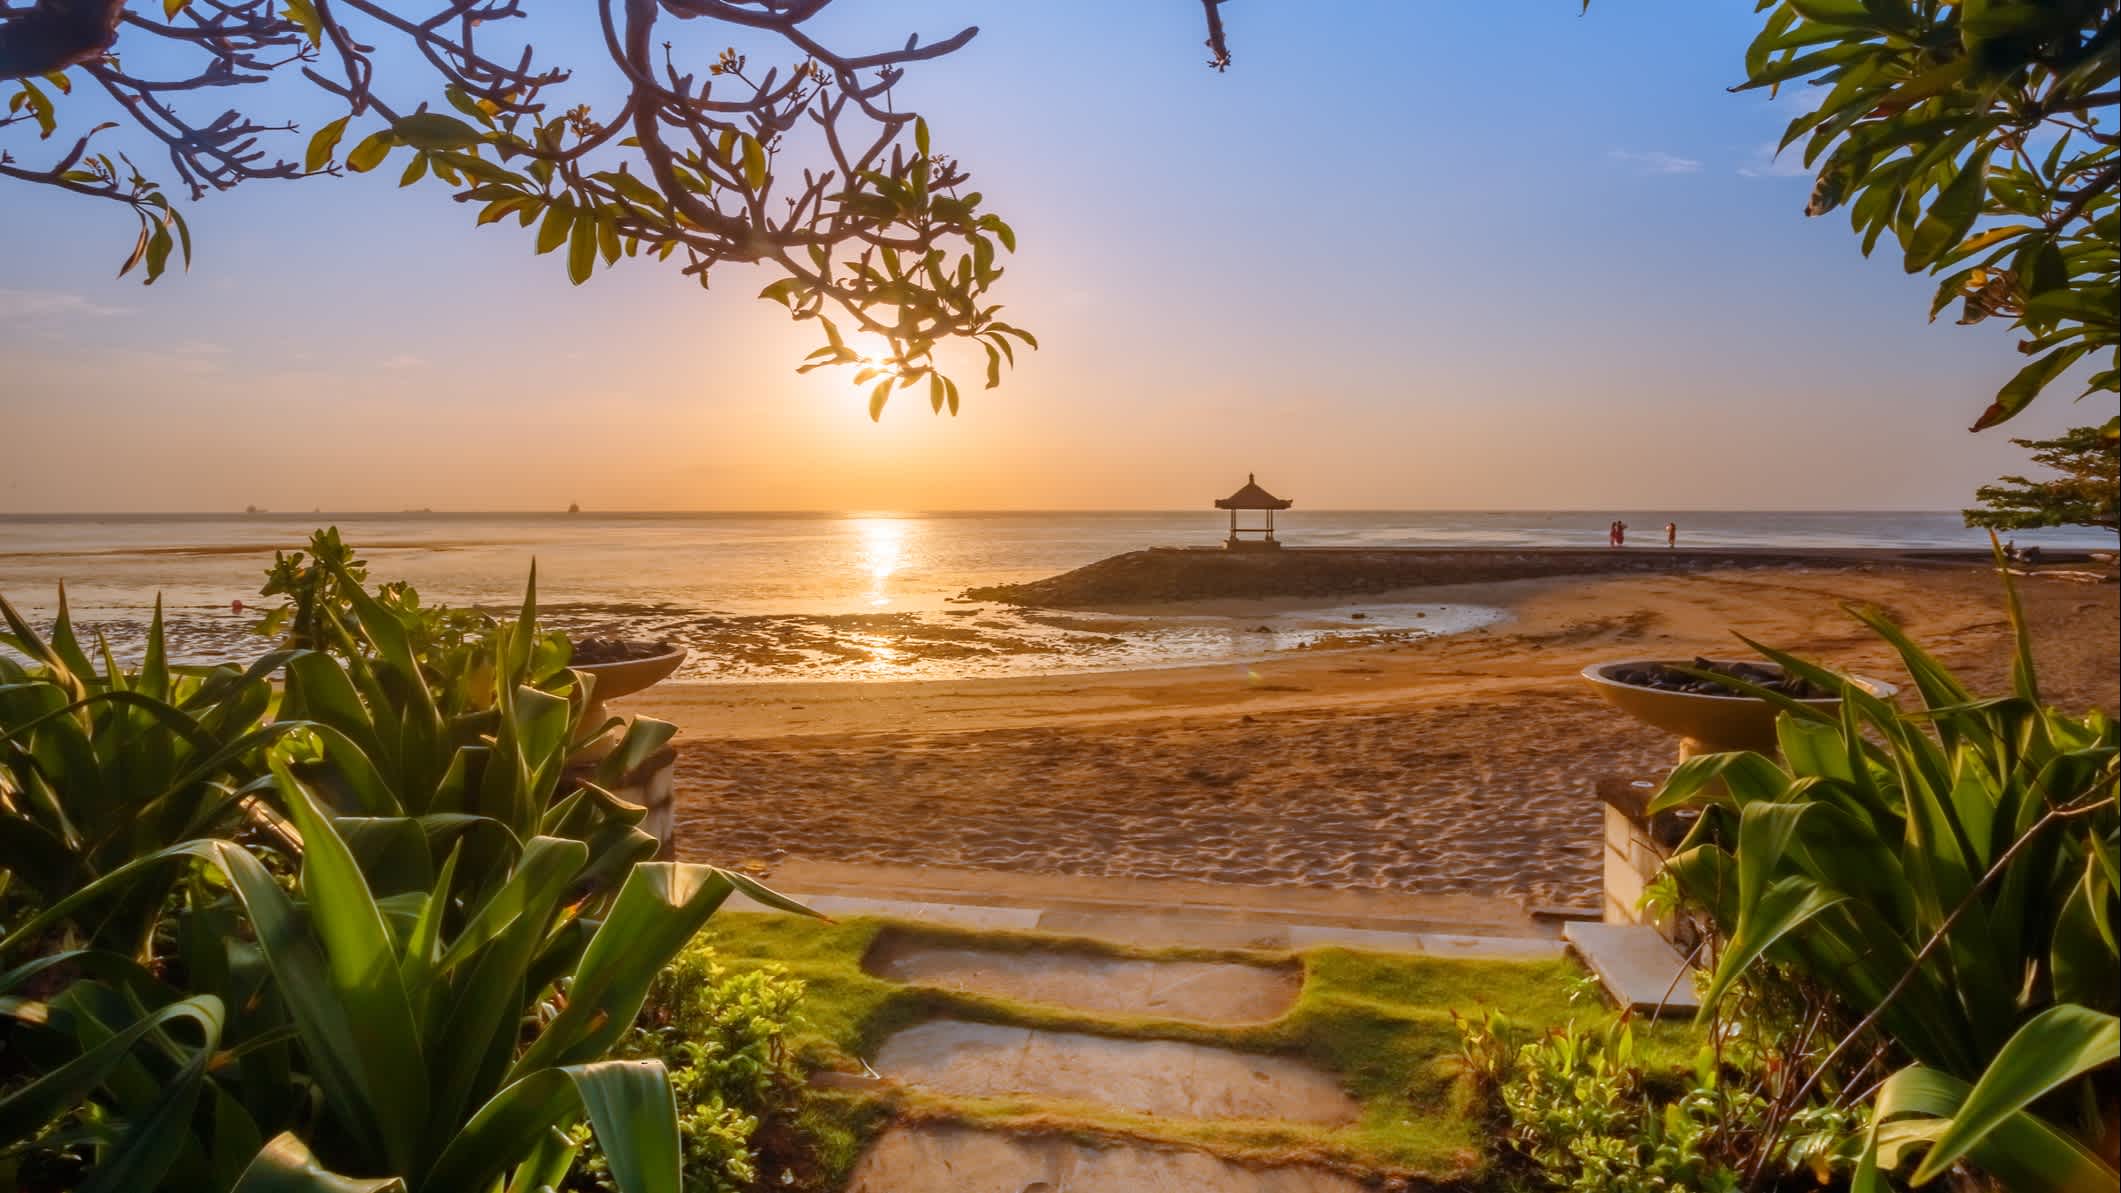 Lever du soleil sur la plage déserte de Nusa Dua à Bali, en Indonésie.